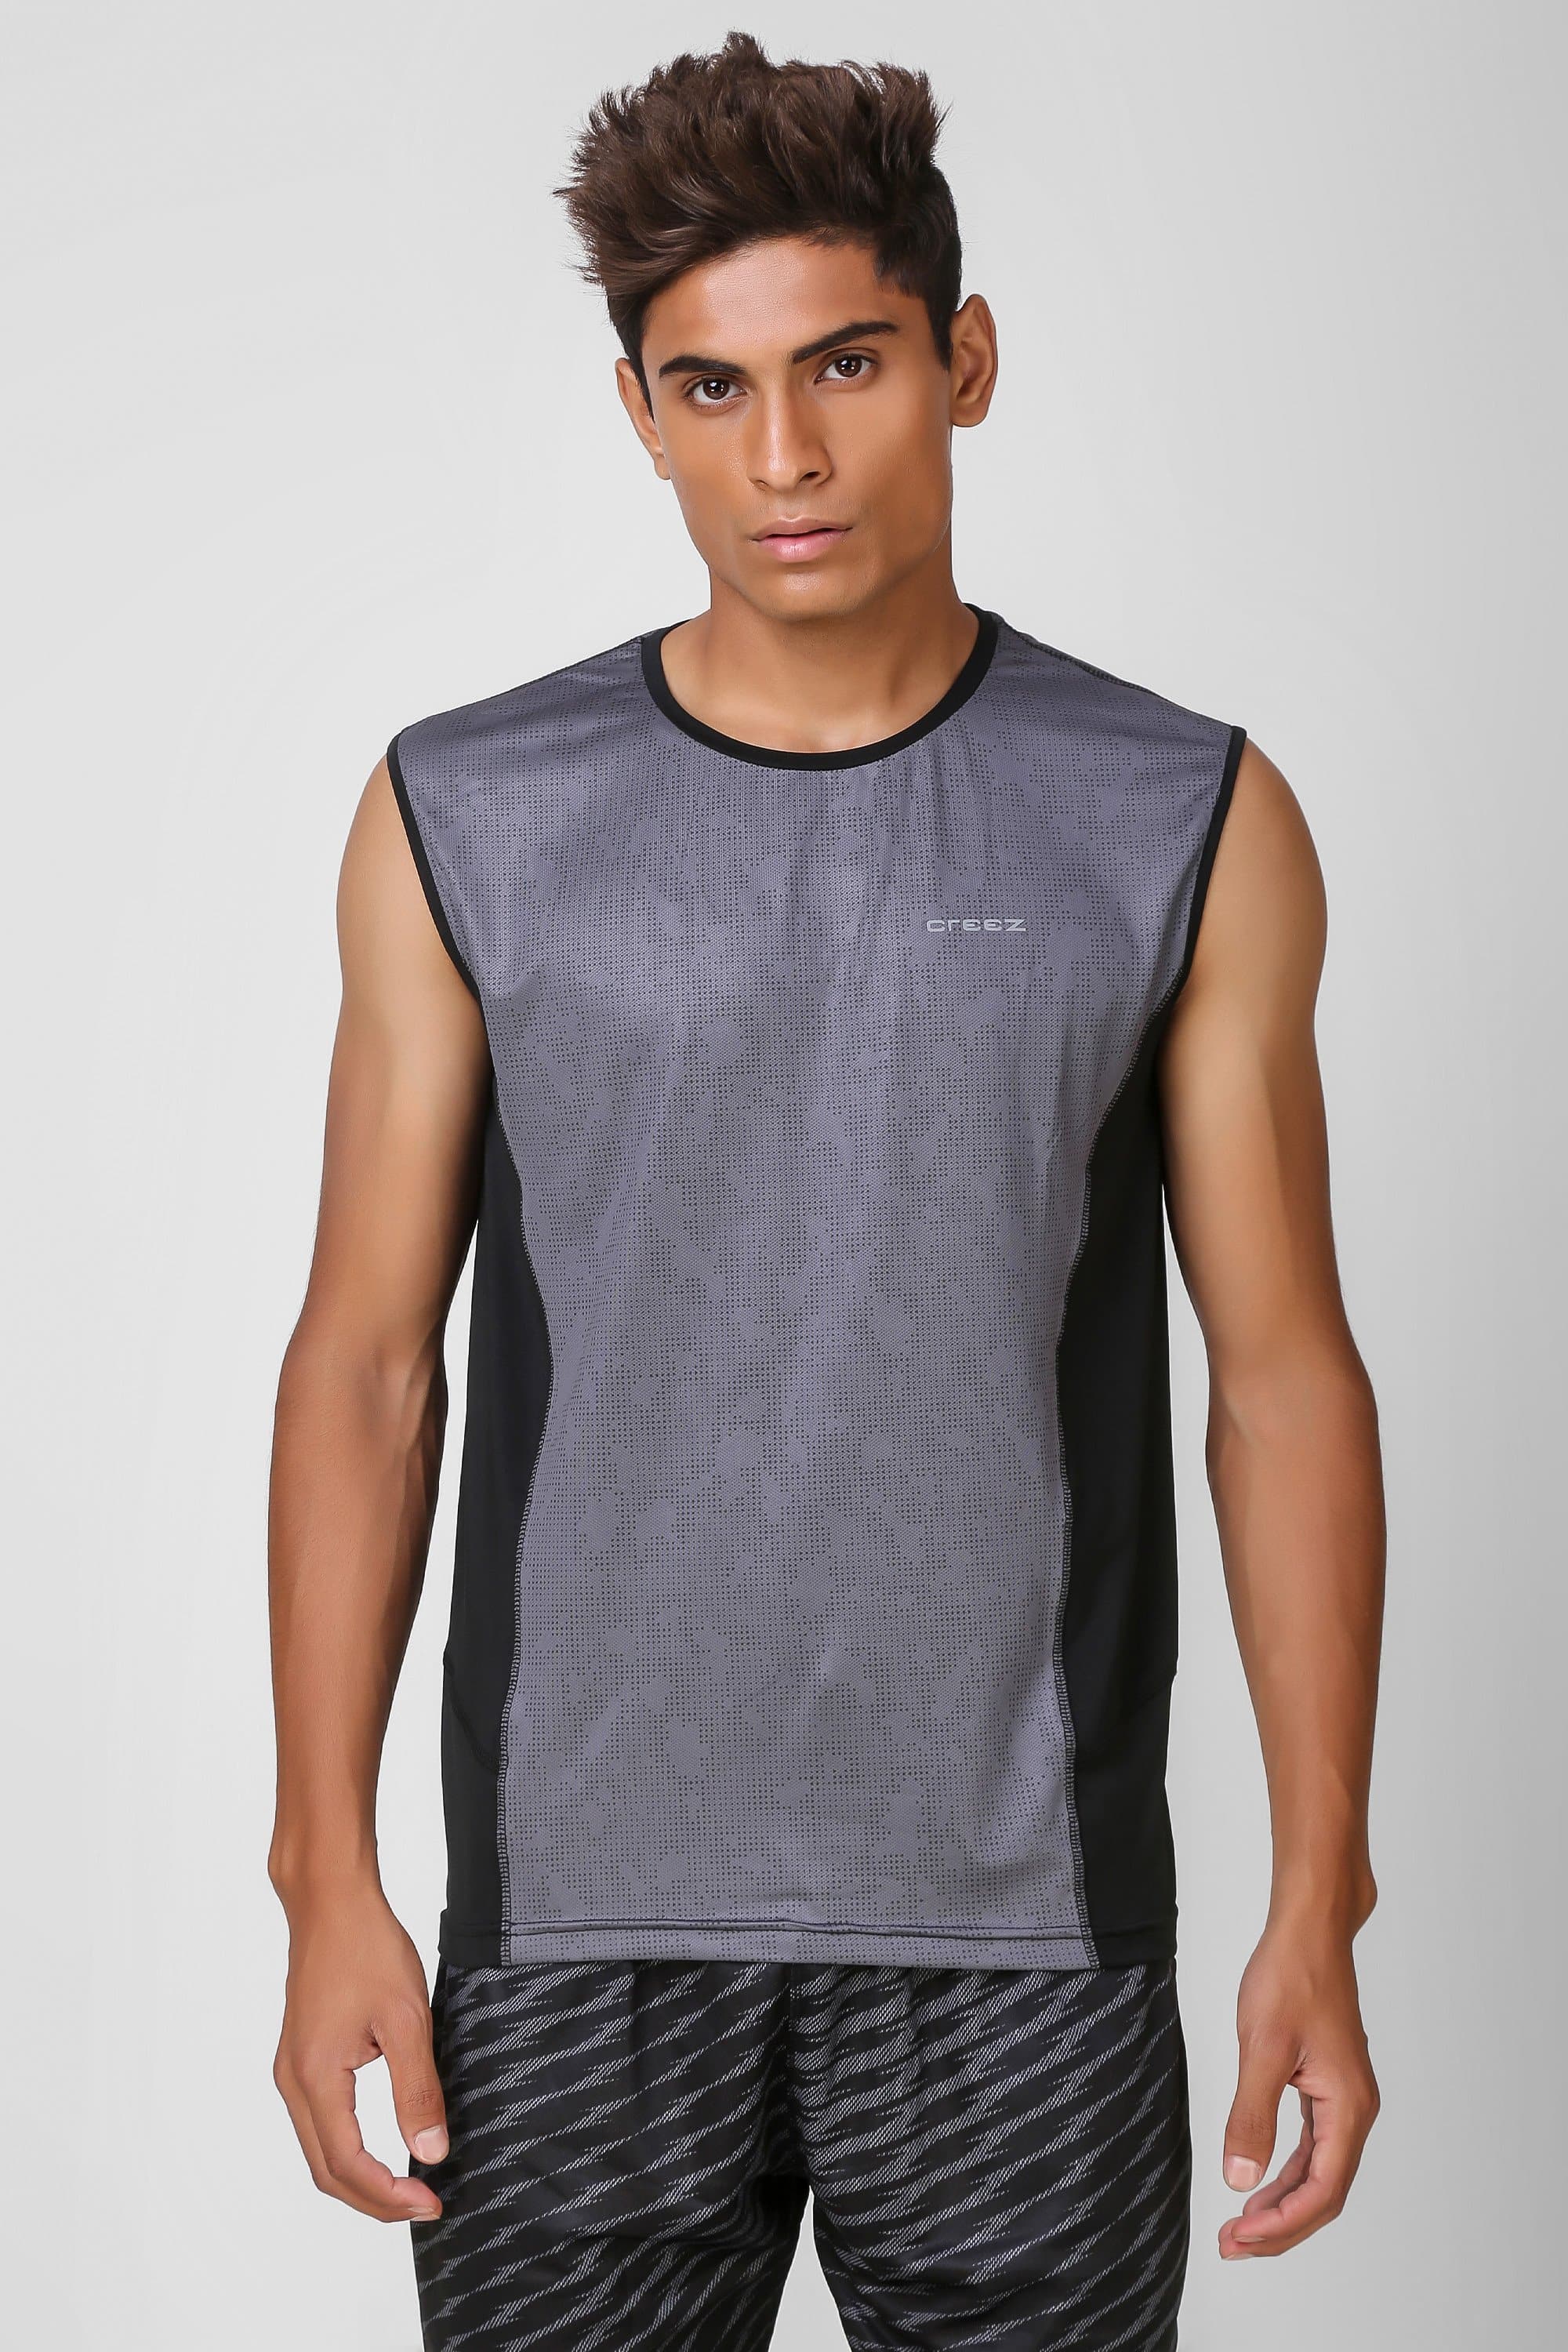 Camo Print Stretchable Sleeveless Tshirt 1